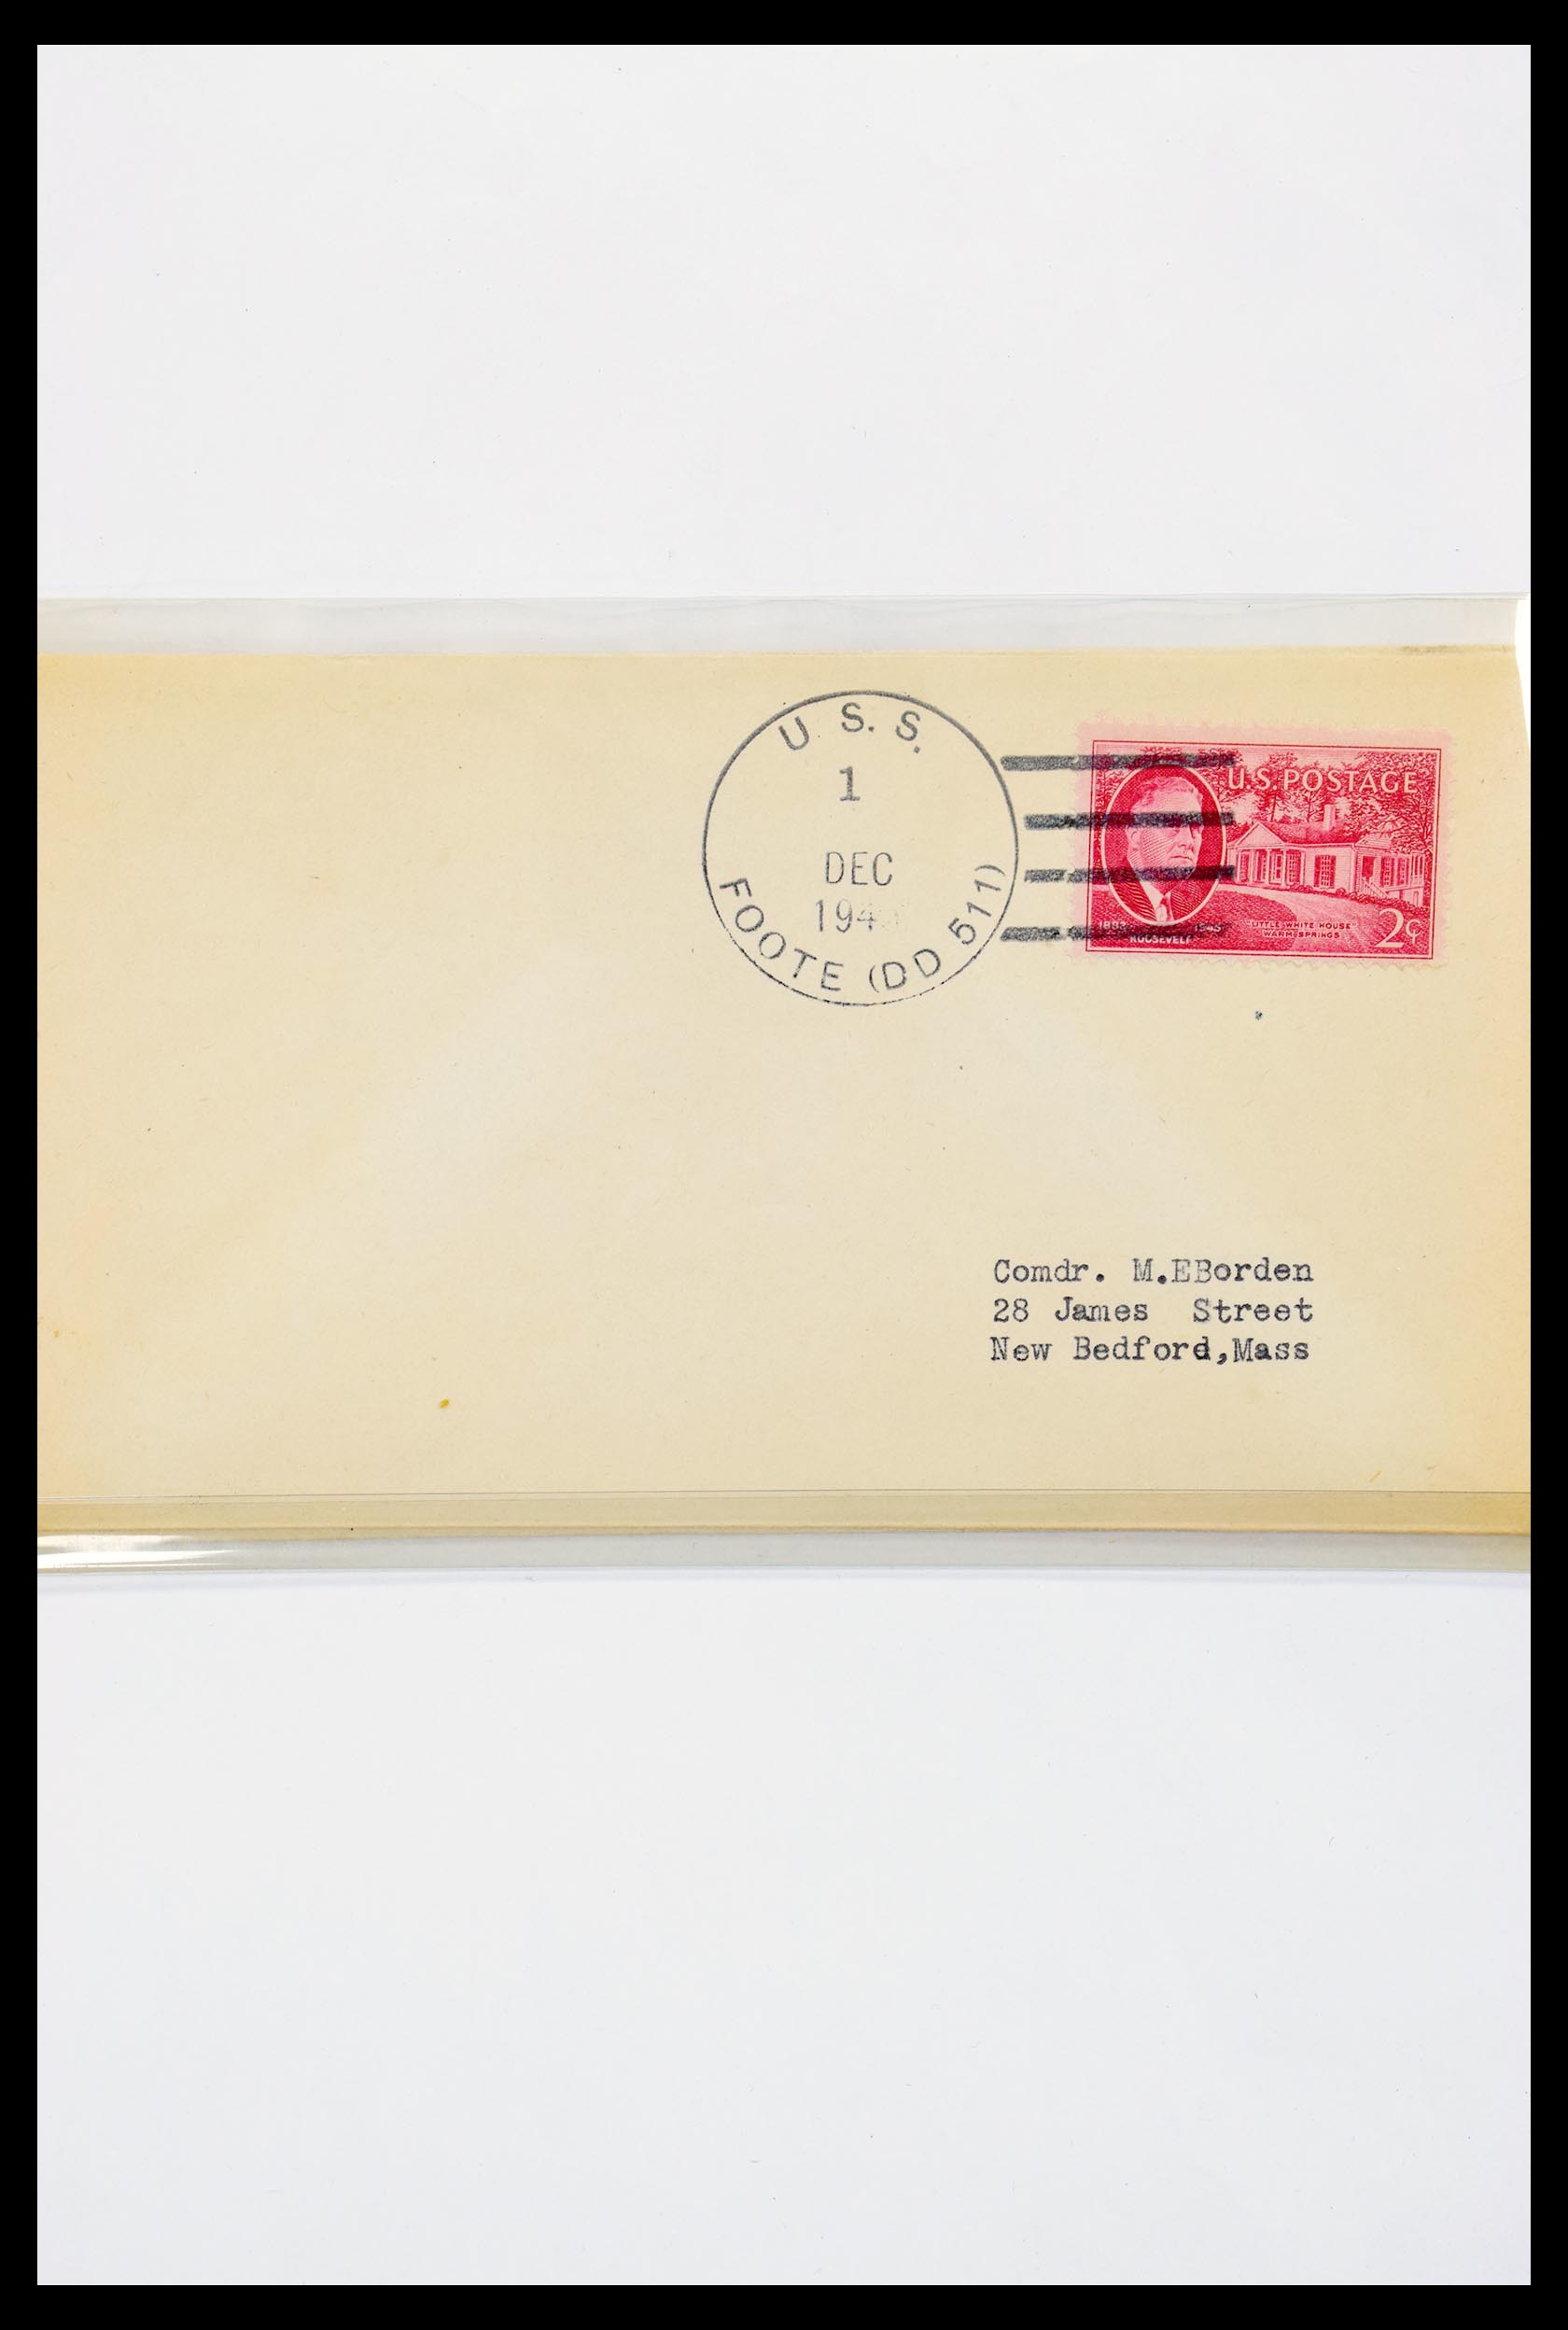 30341 311 - 30341 USA scheepspost brieven 1930-1970.